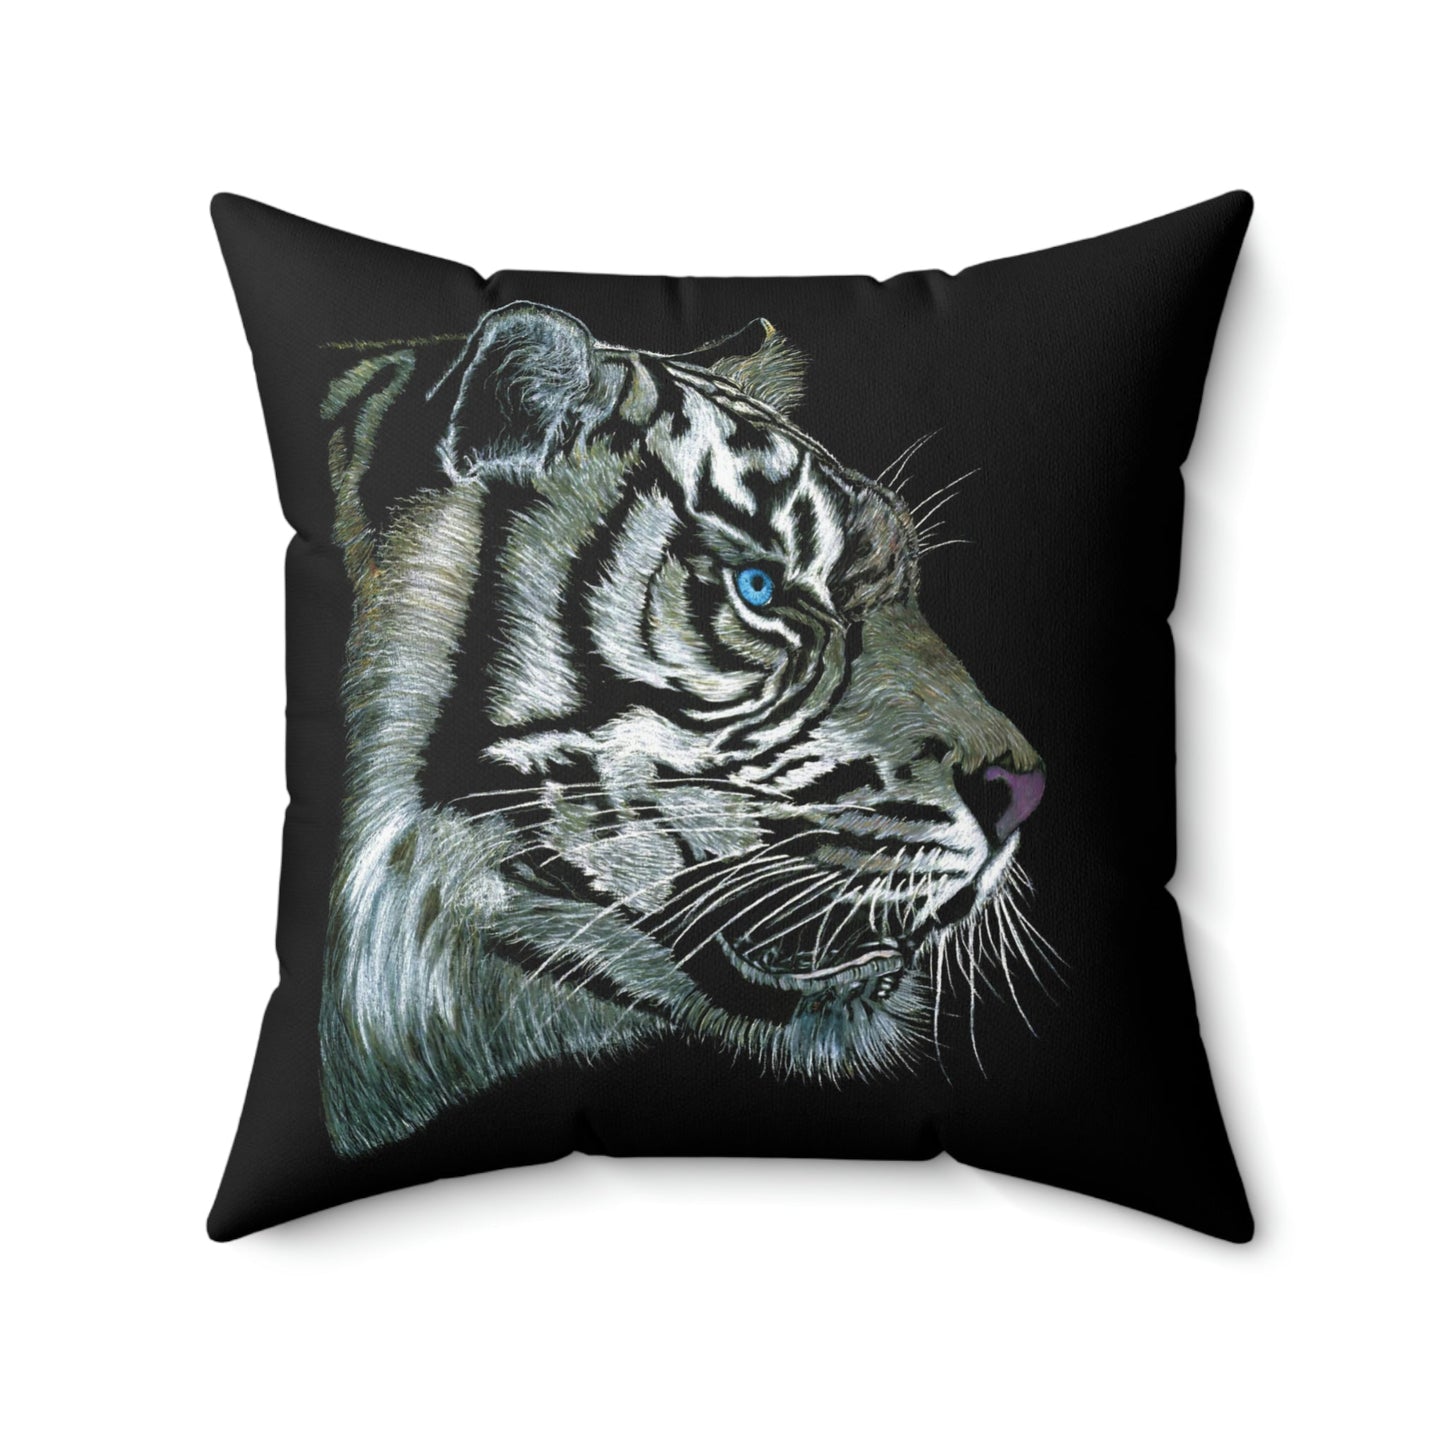 Spun Polyester Throw Pillow - "WHITE TIGER"